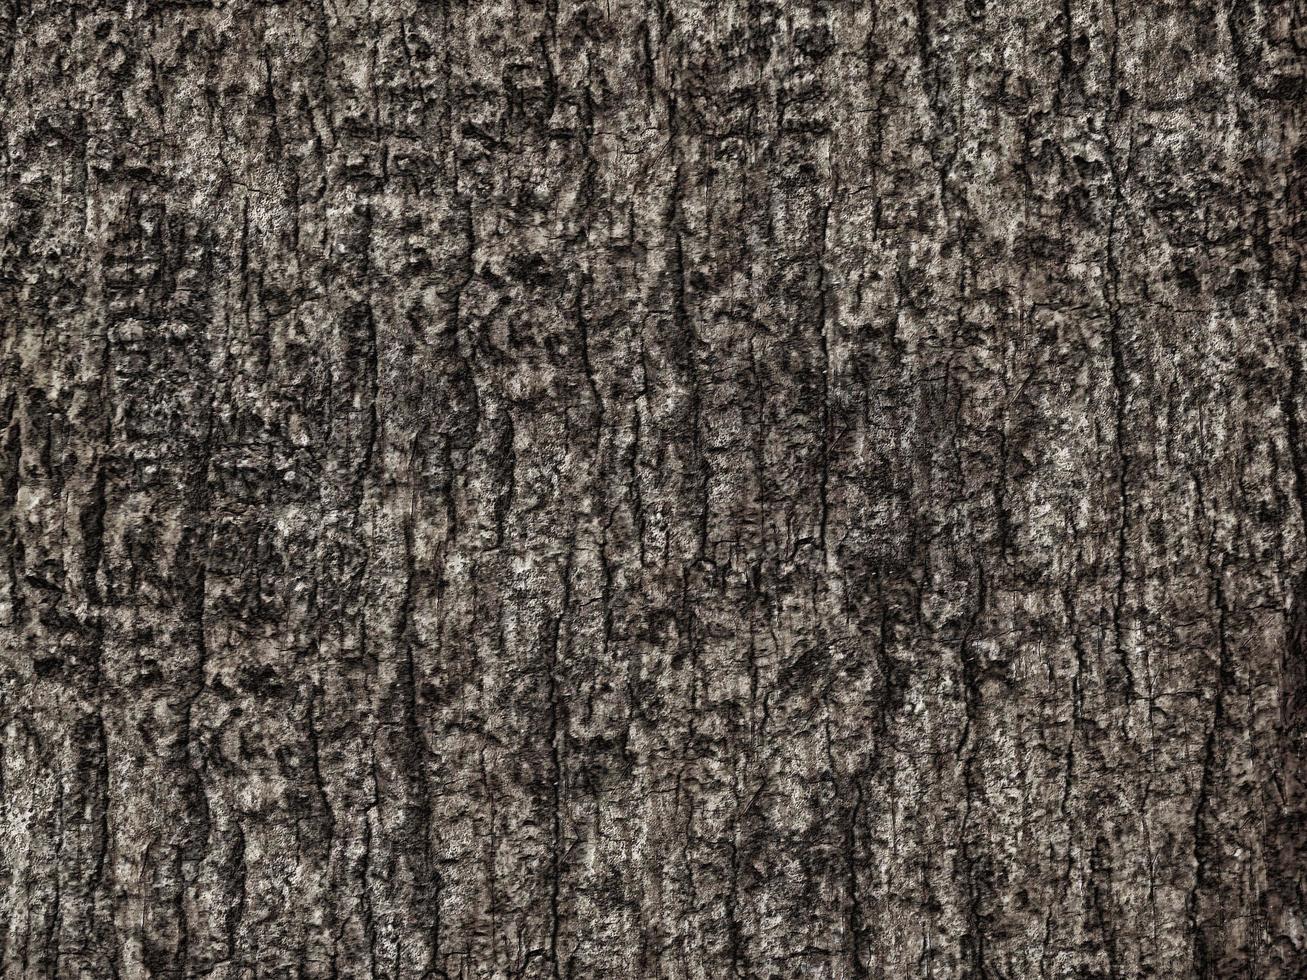 textura de madera oscura en el jardín foto